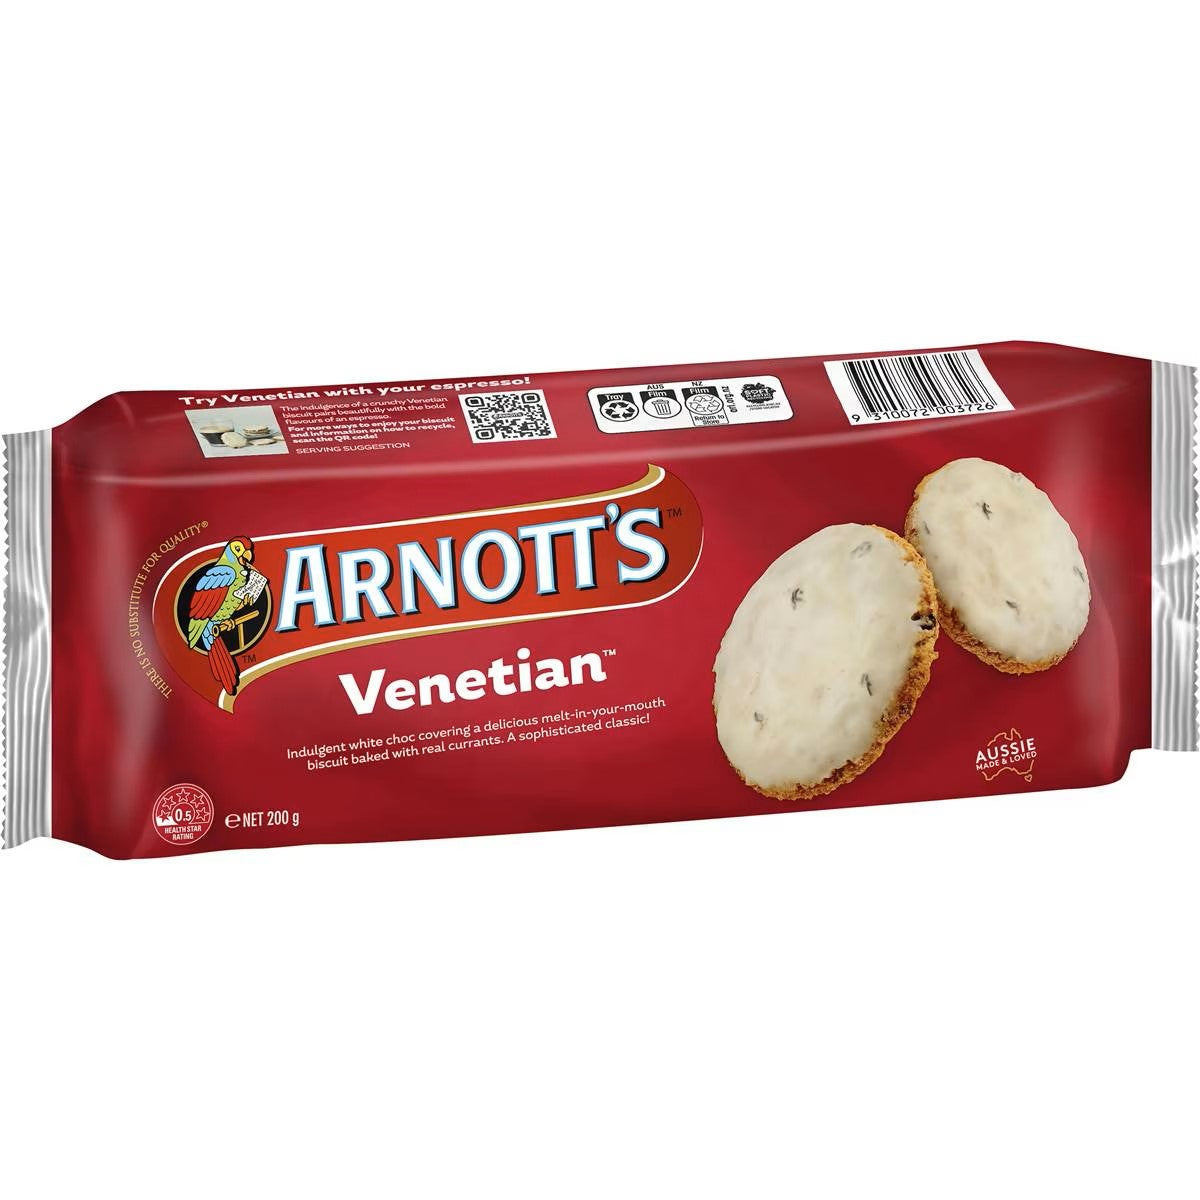 Arnott's Venetian Biscuits 200g